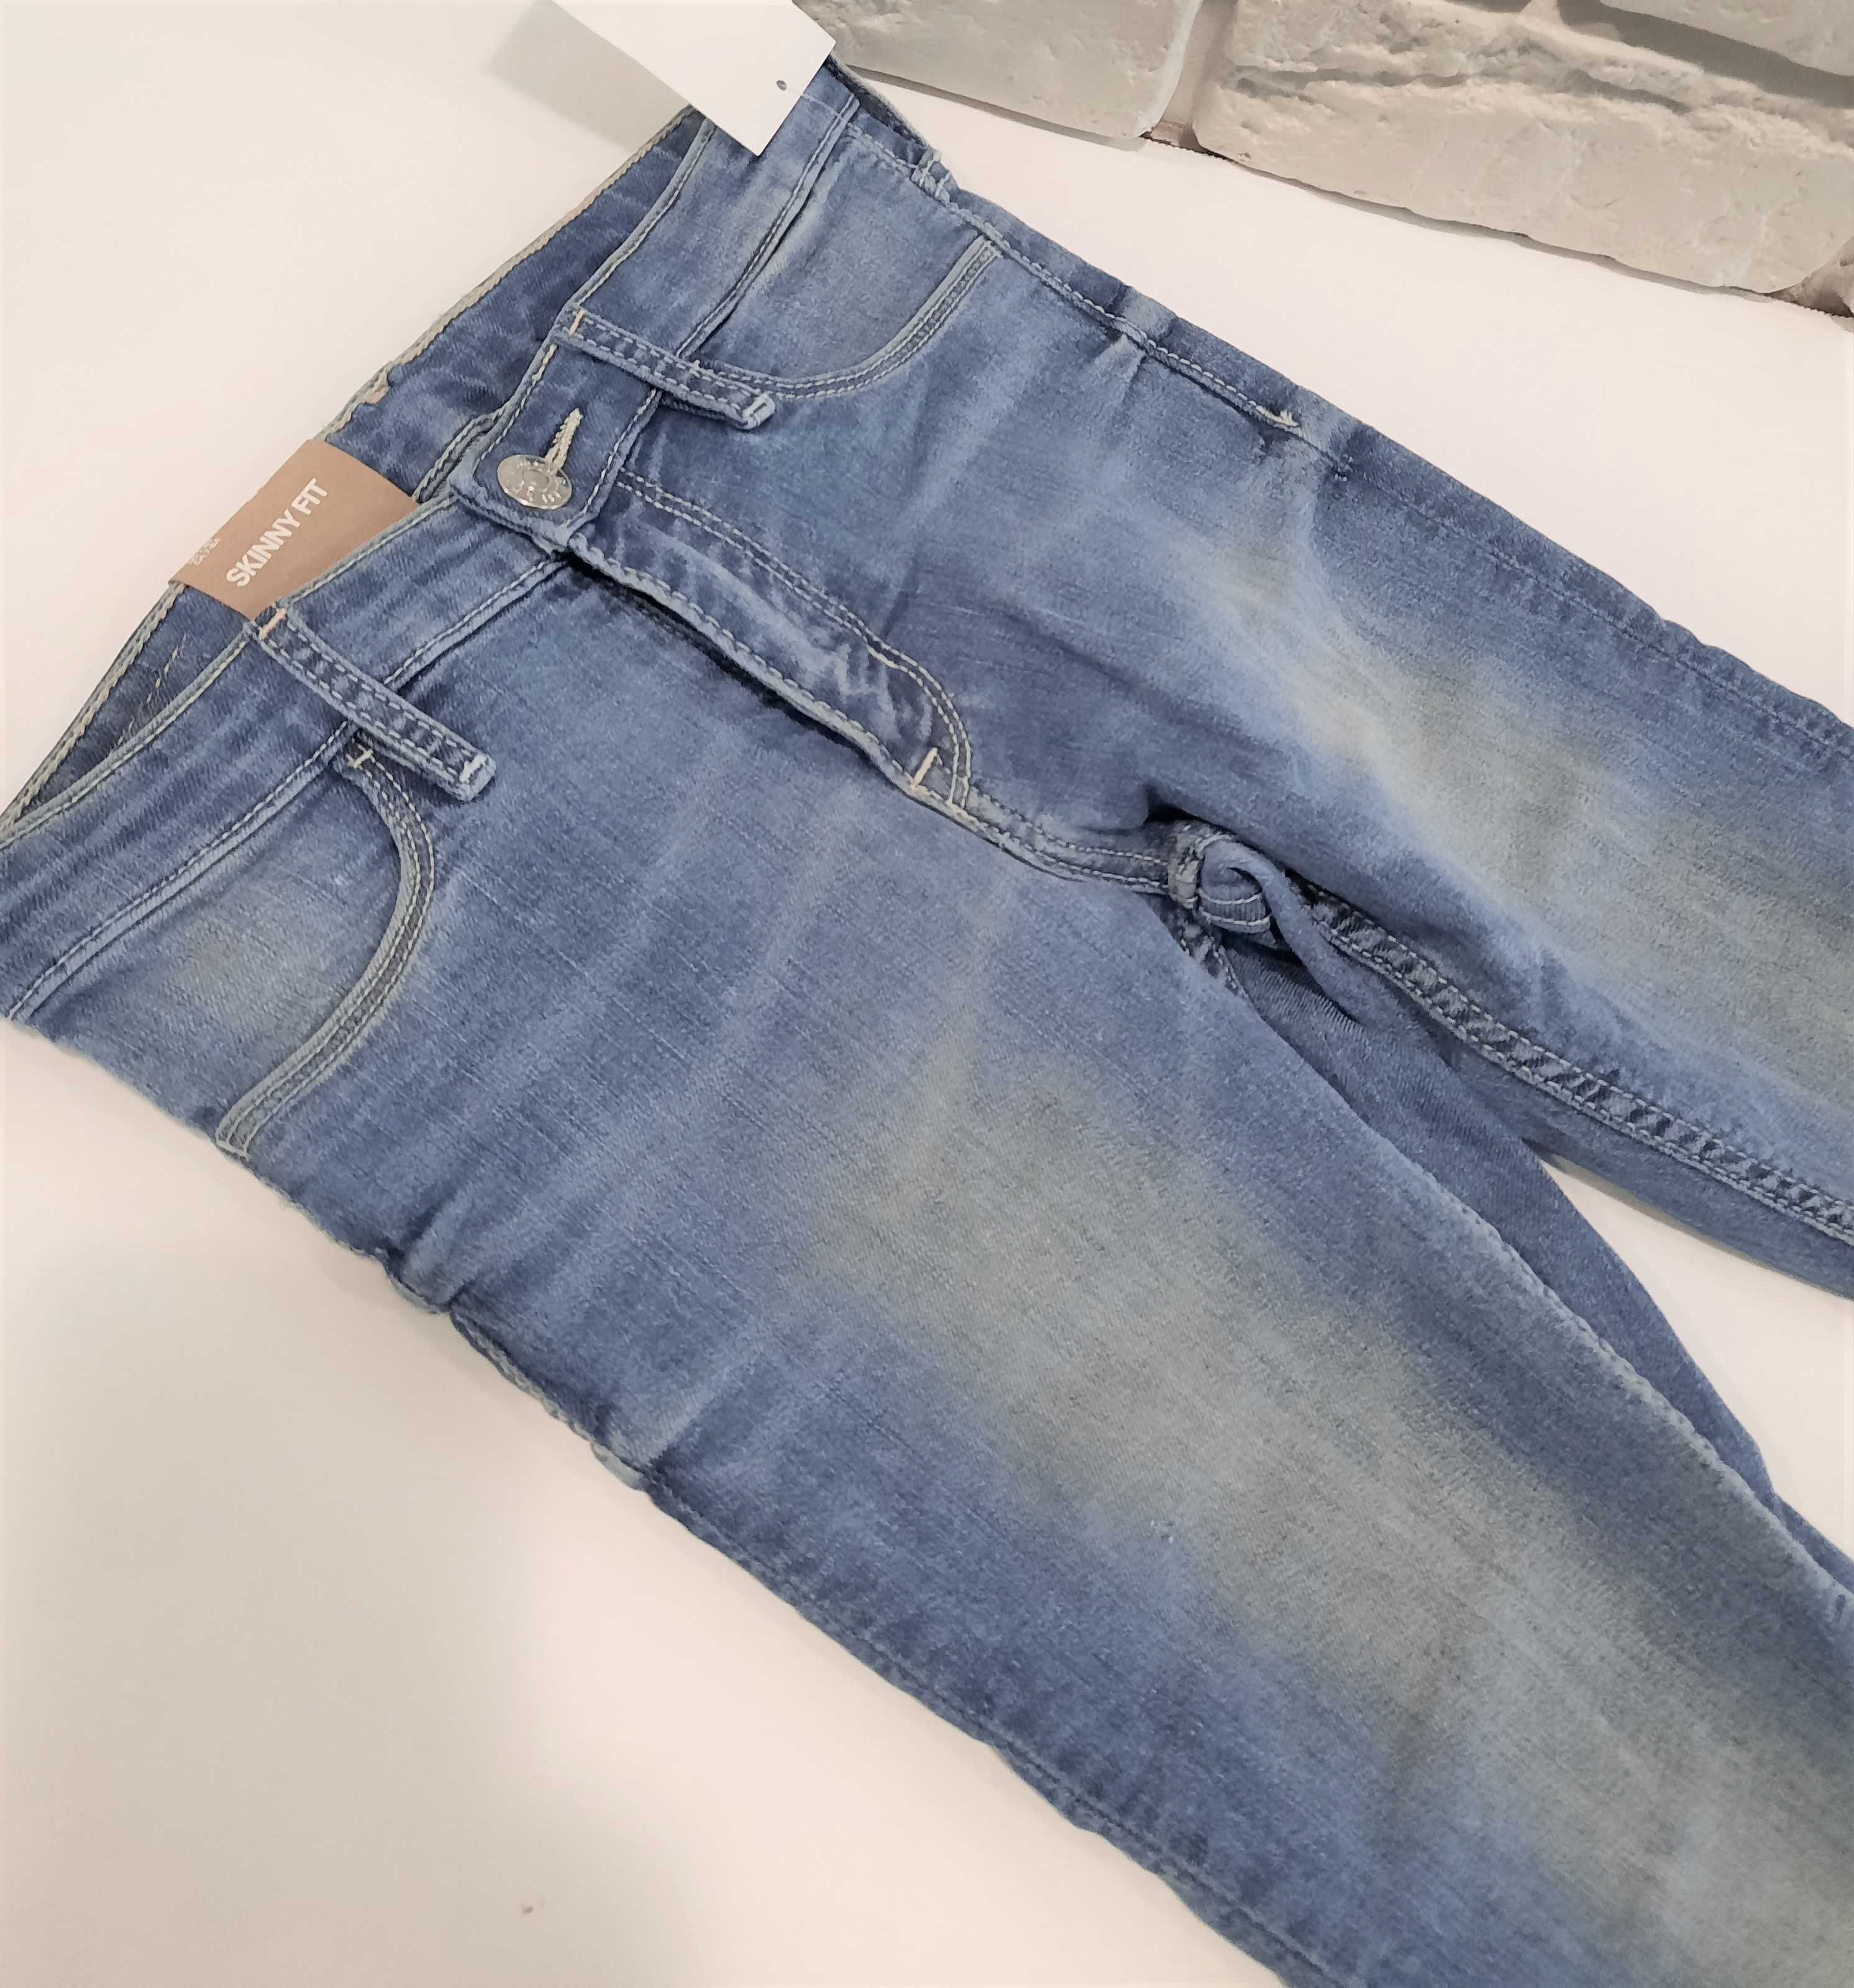 Dżinsy Skinny Fit roz 128 H&M jeansy spodnie dżinsowe jeansowe rurki